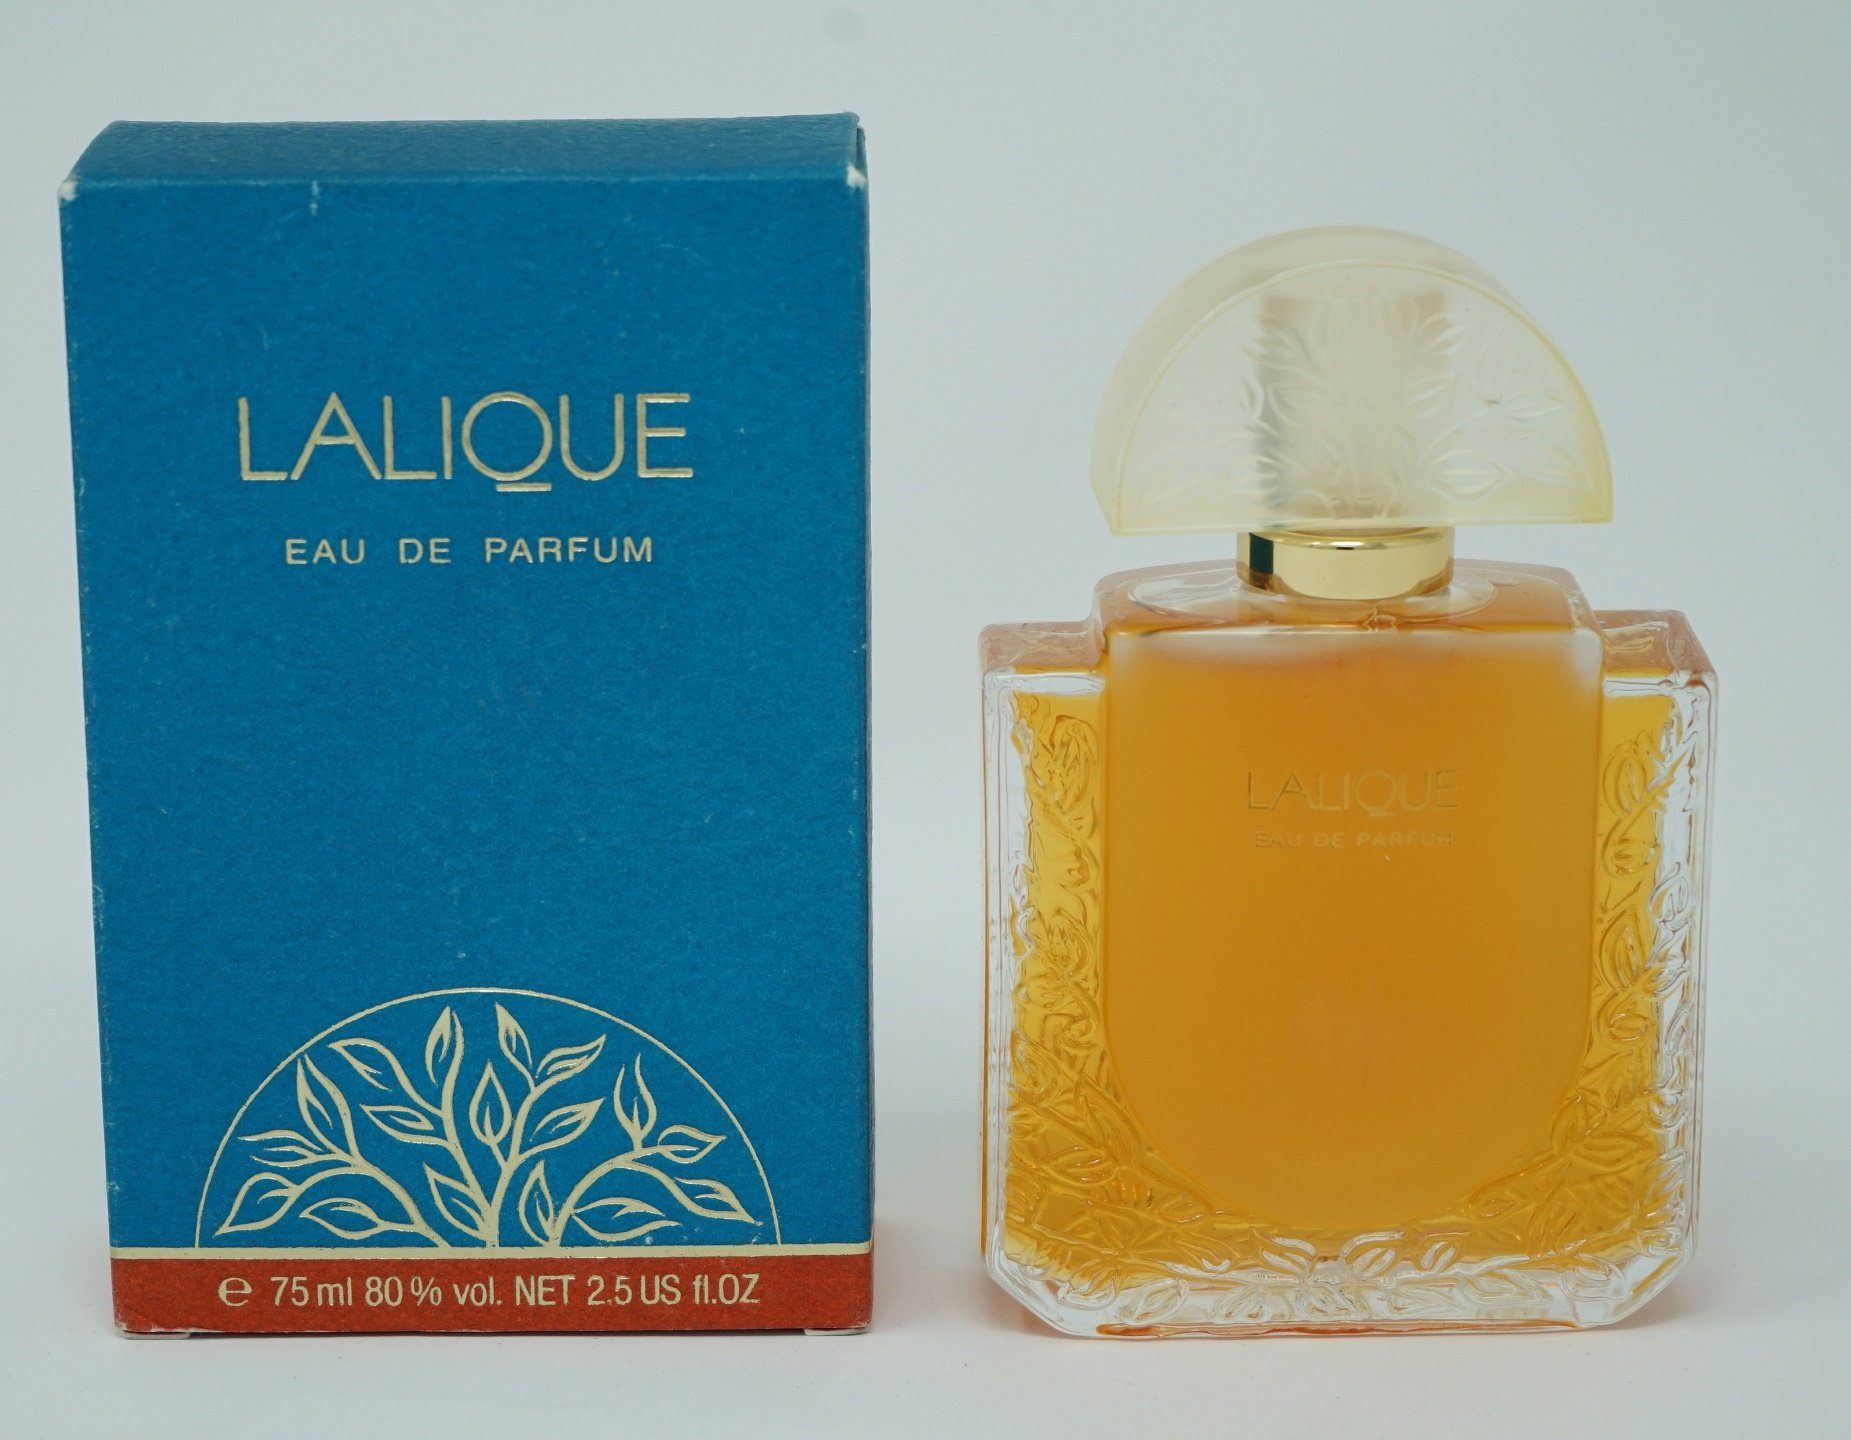 CHANEL Lalique Eau de Parfum Lalique Eau de Parfum 75ml